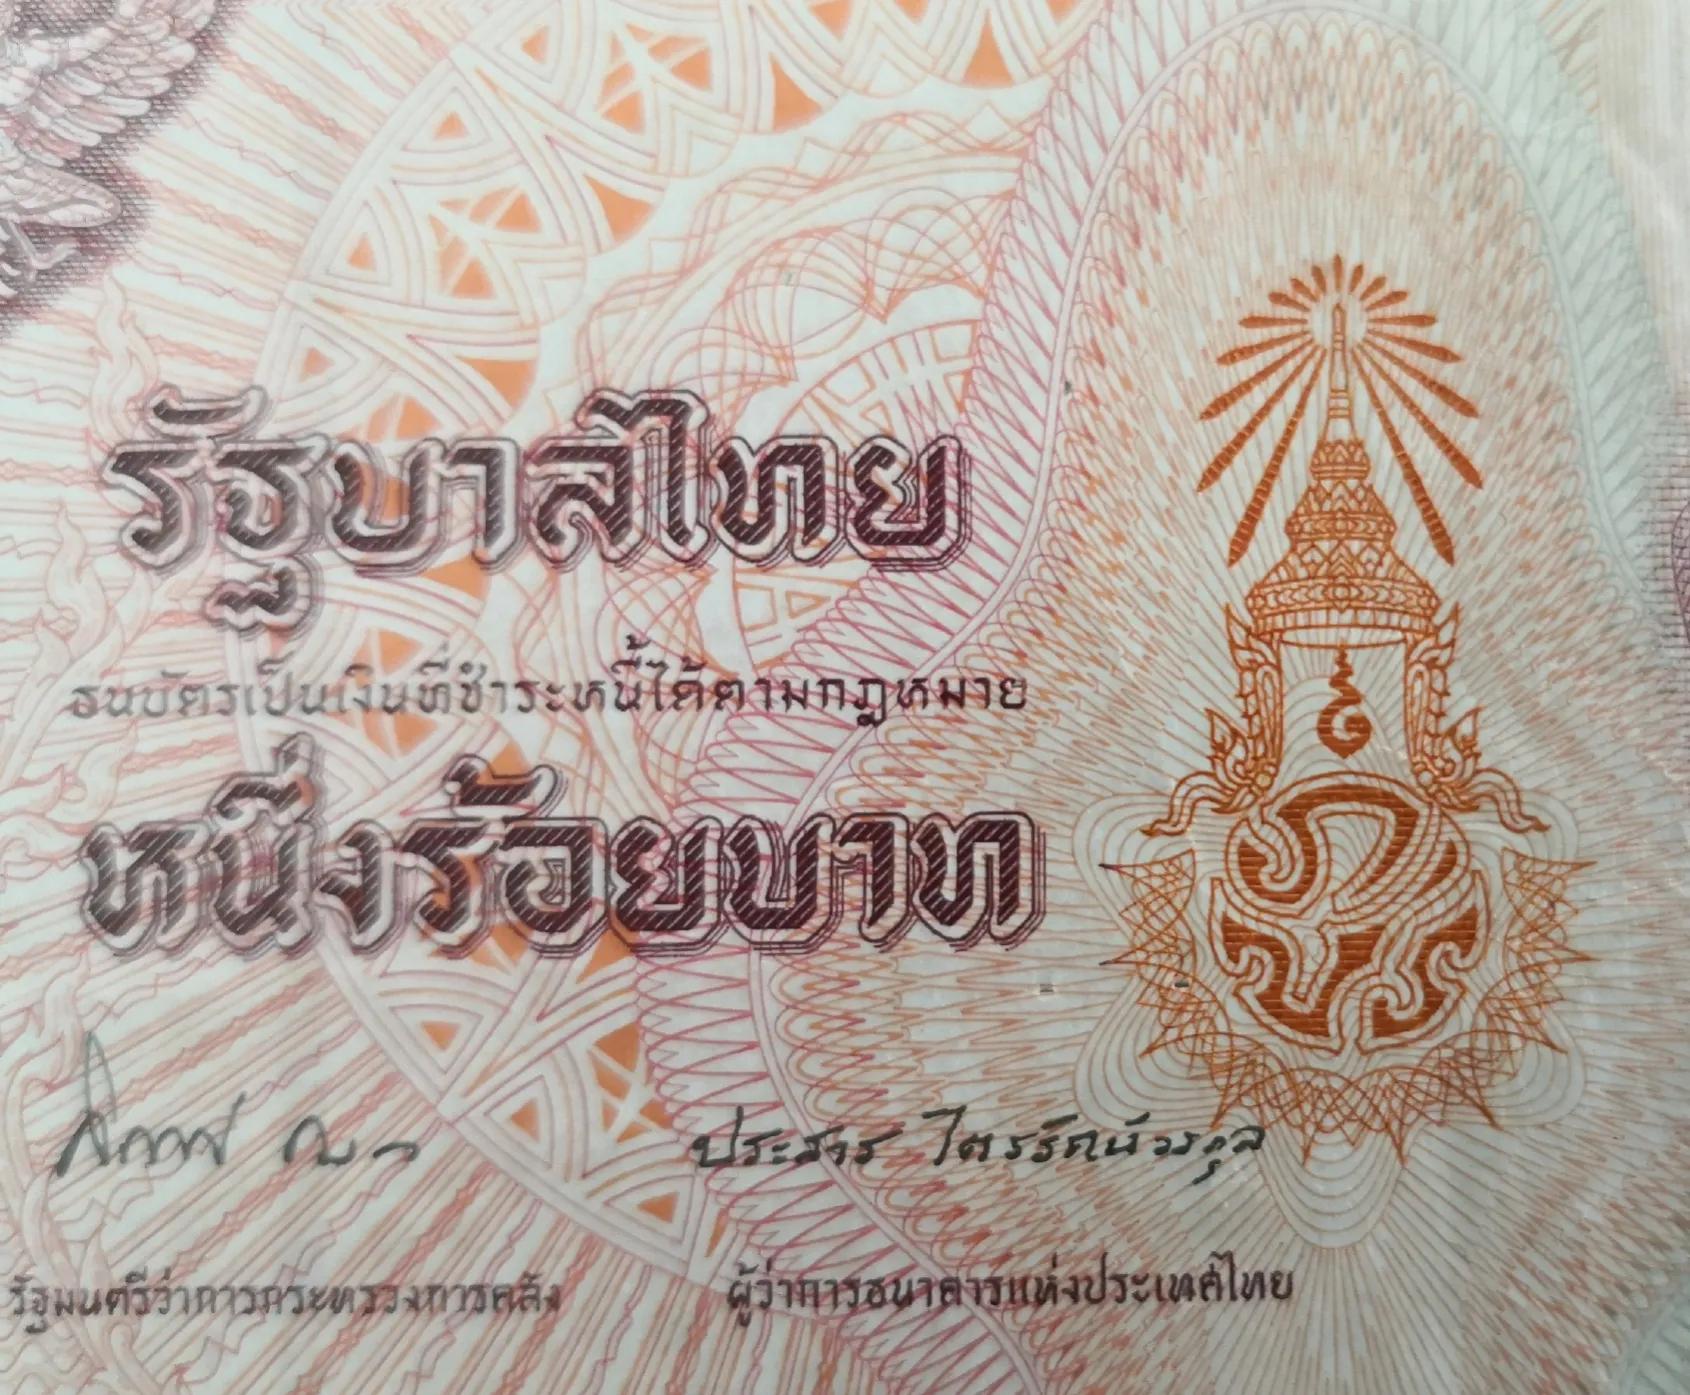 泰币100是人民币多少图片